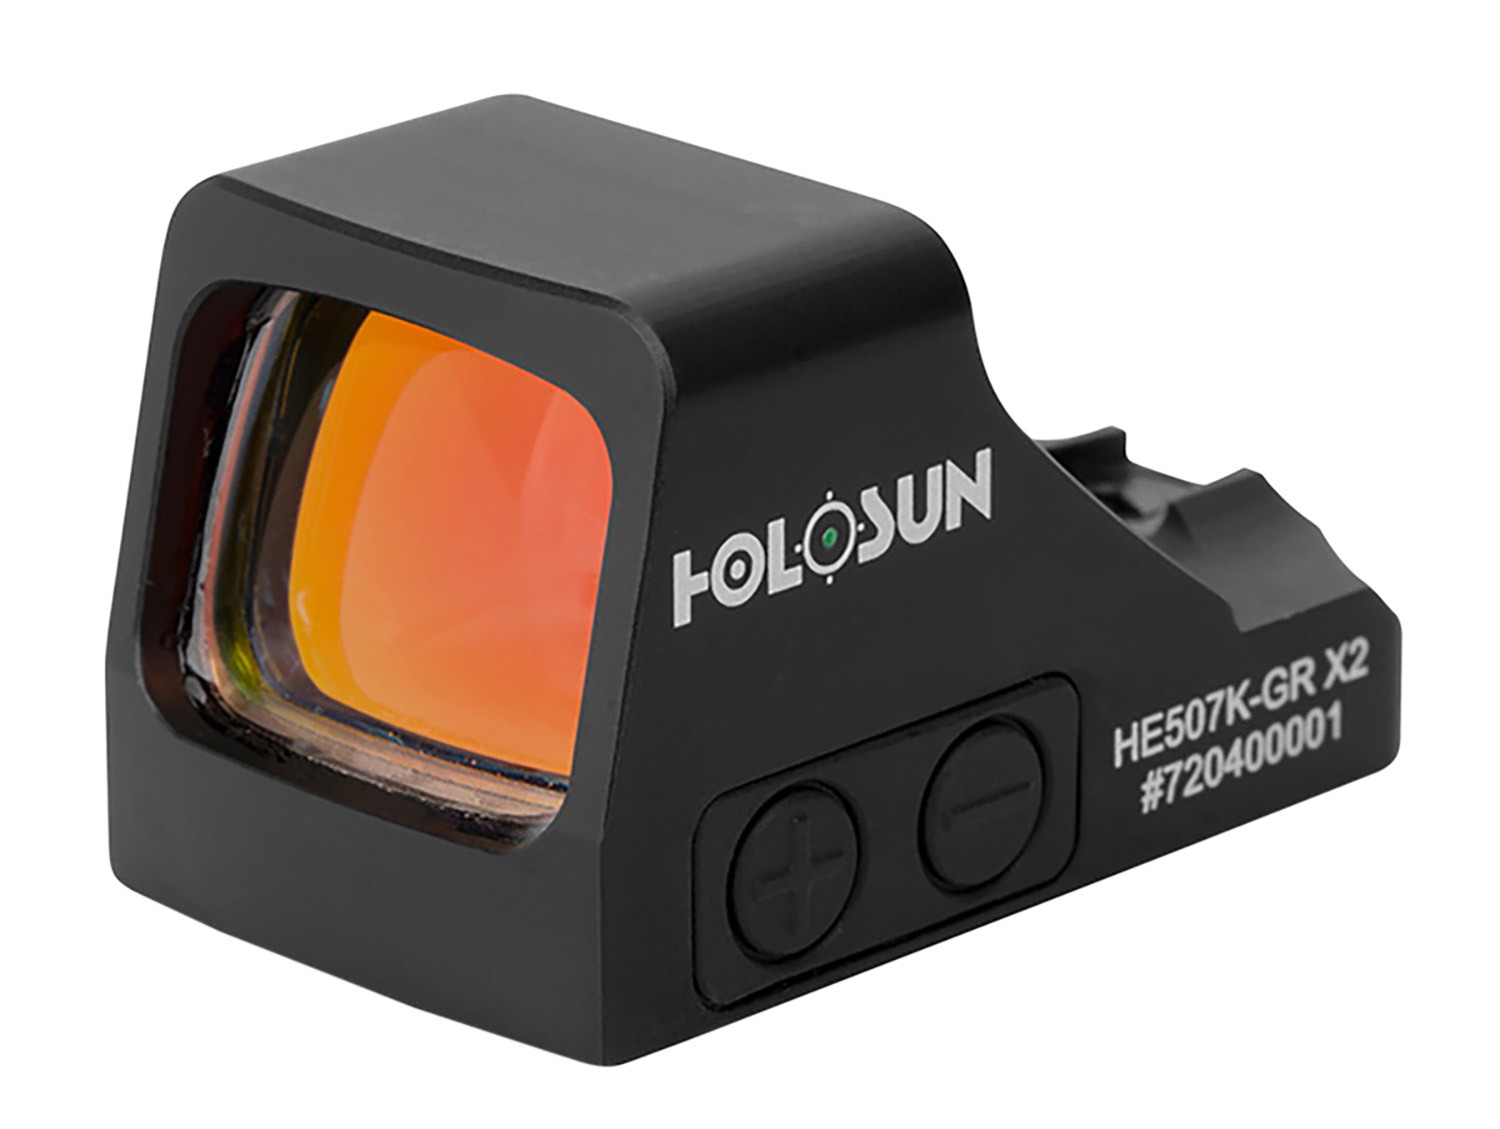 Holosun HE507K-GR X2 Reflex Sight